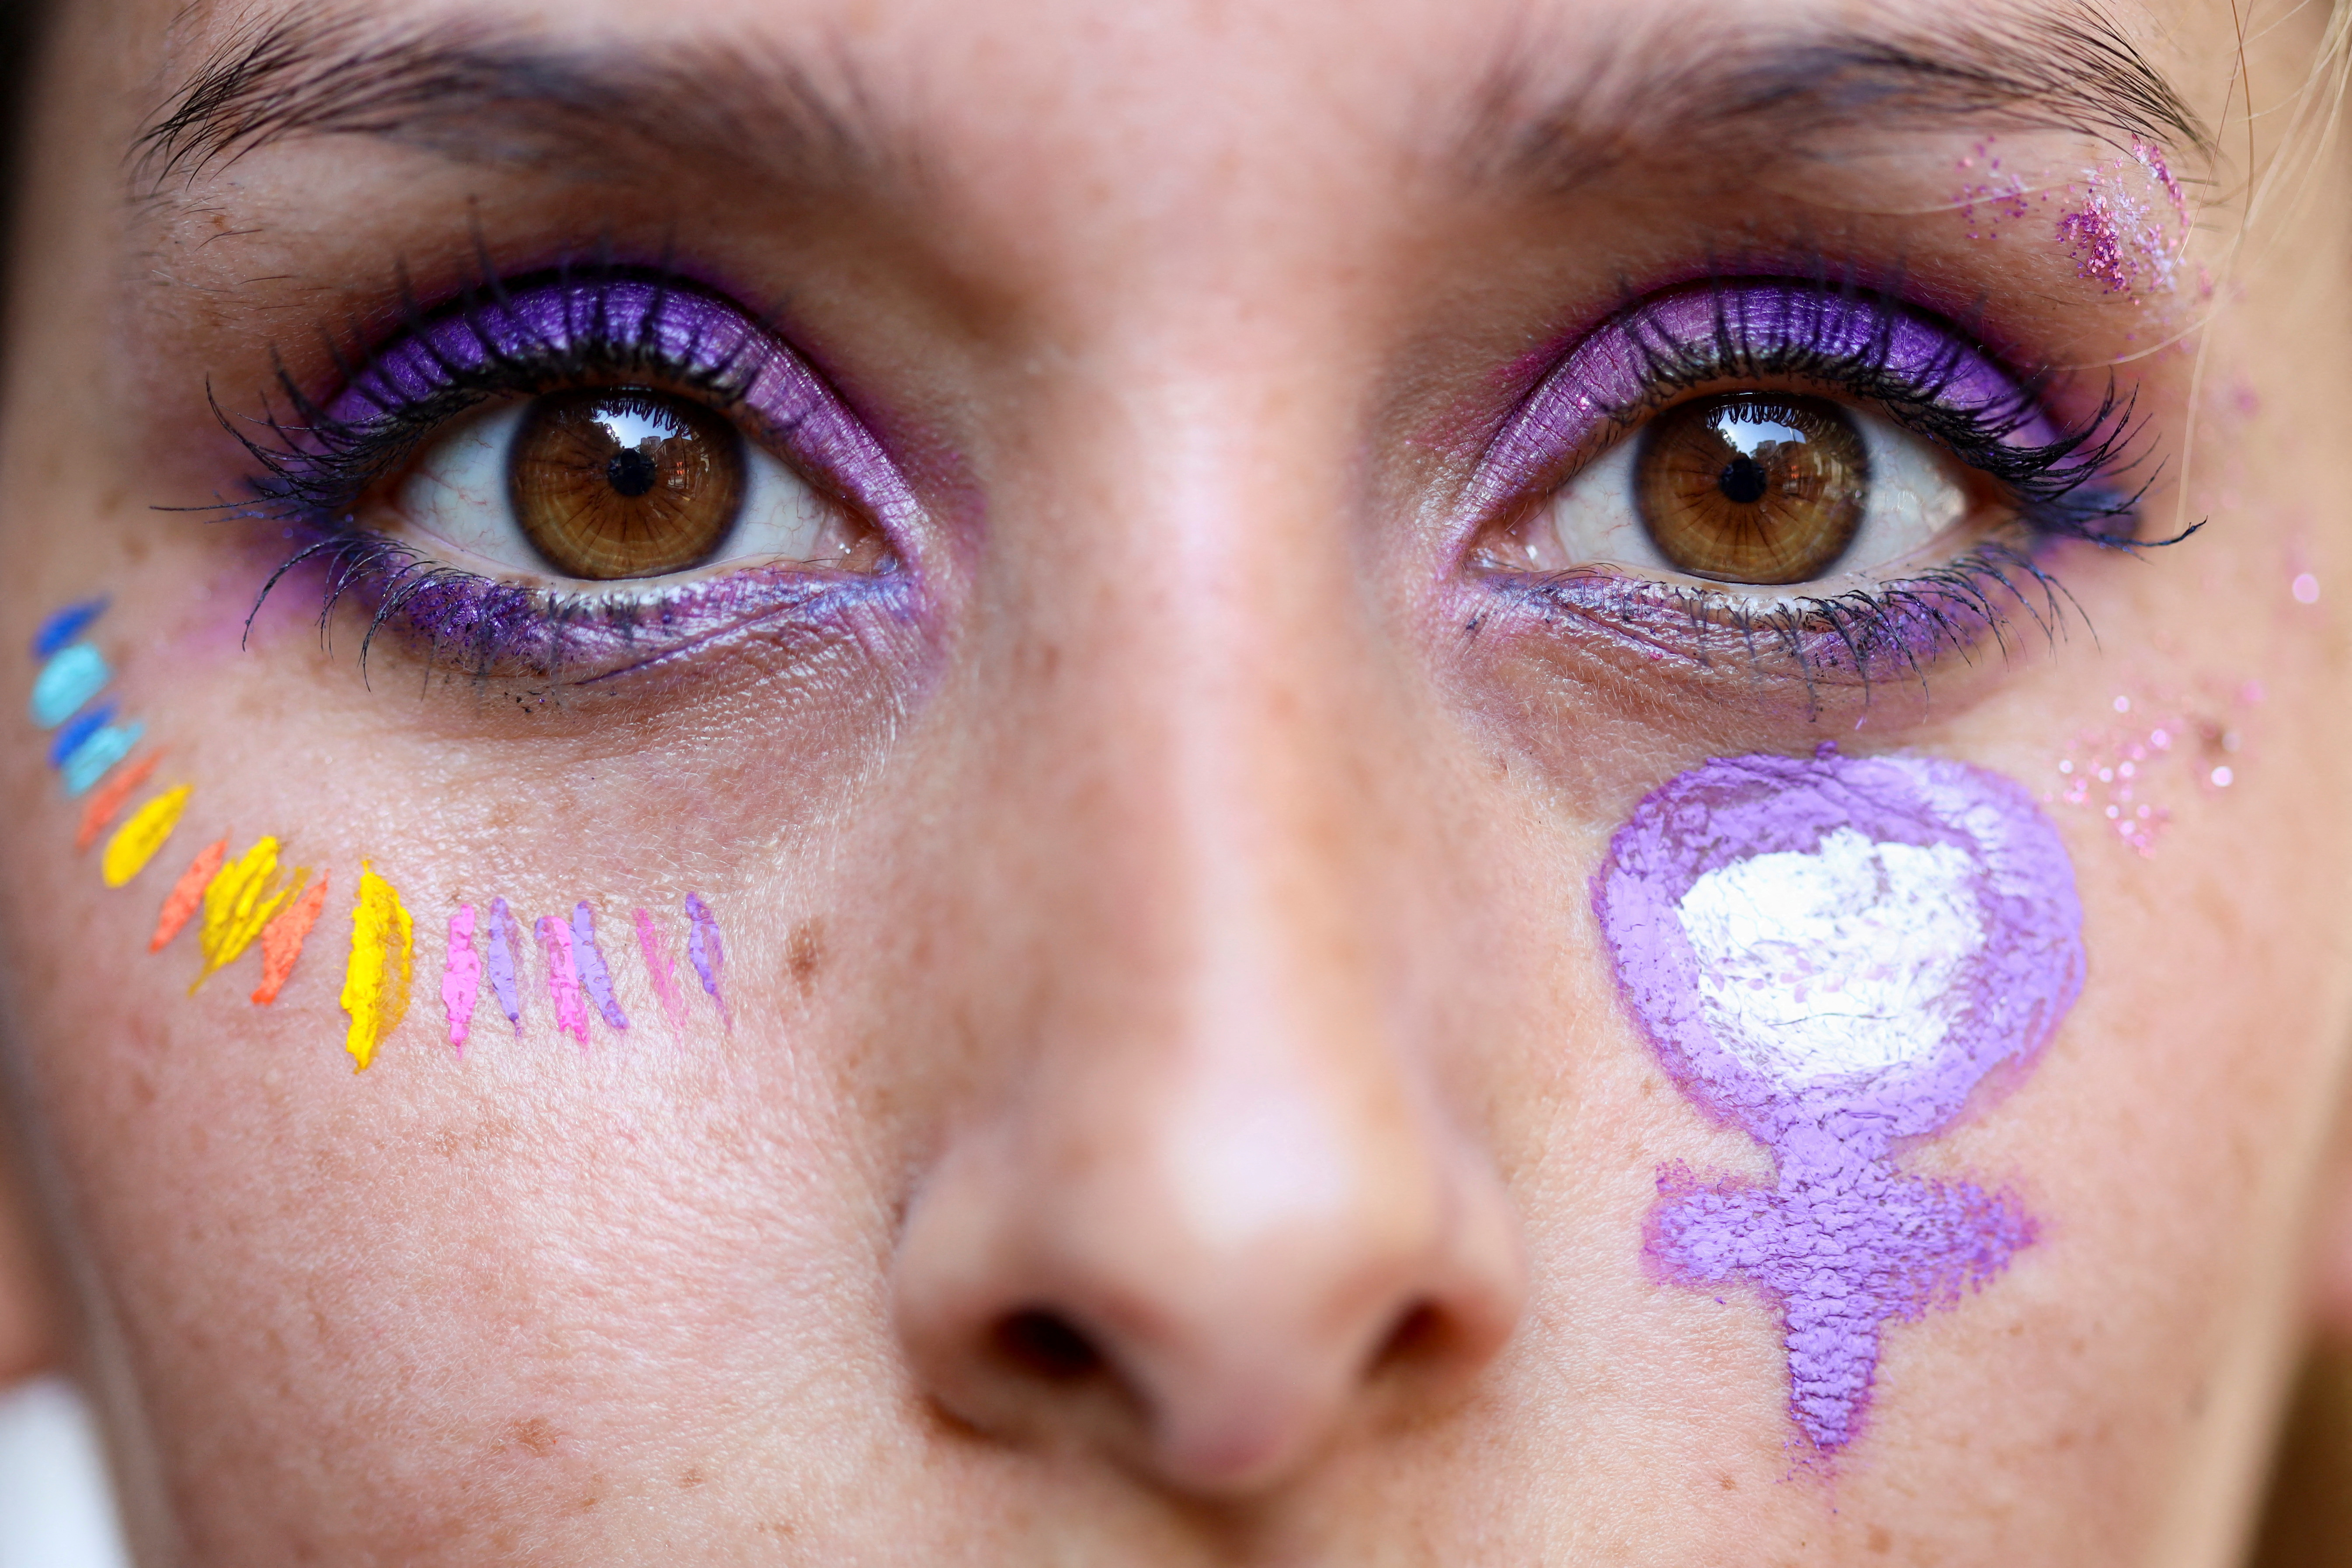 Woman wears face paint.